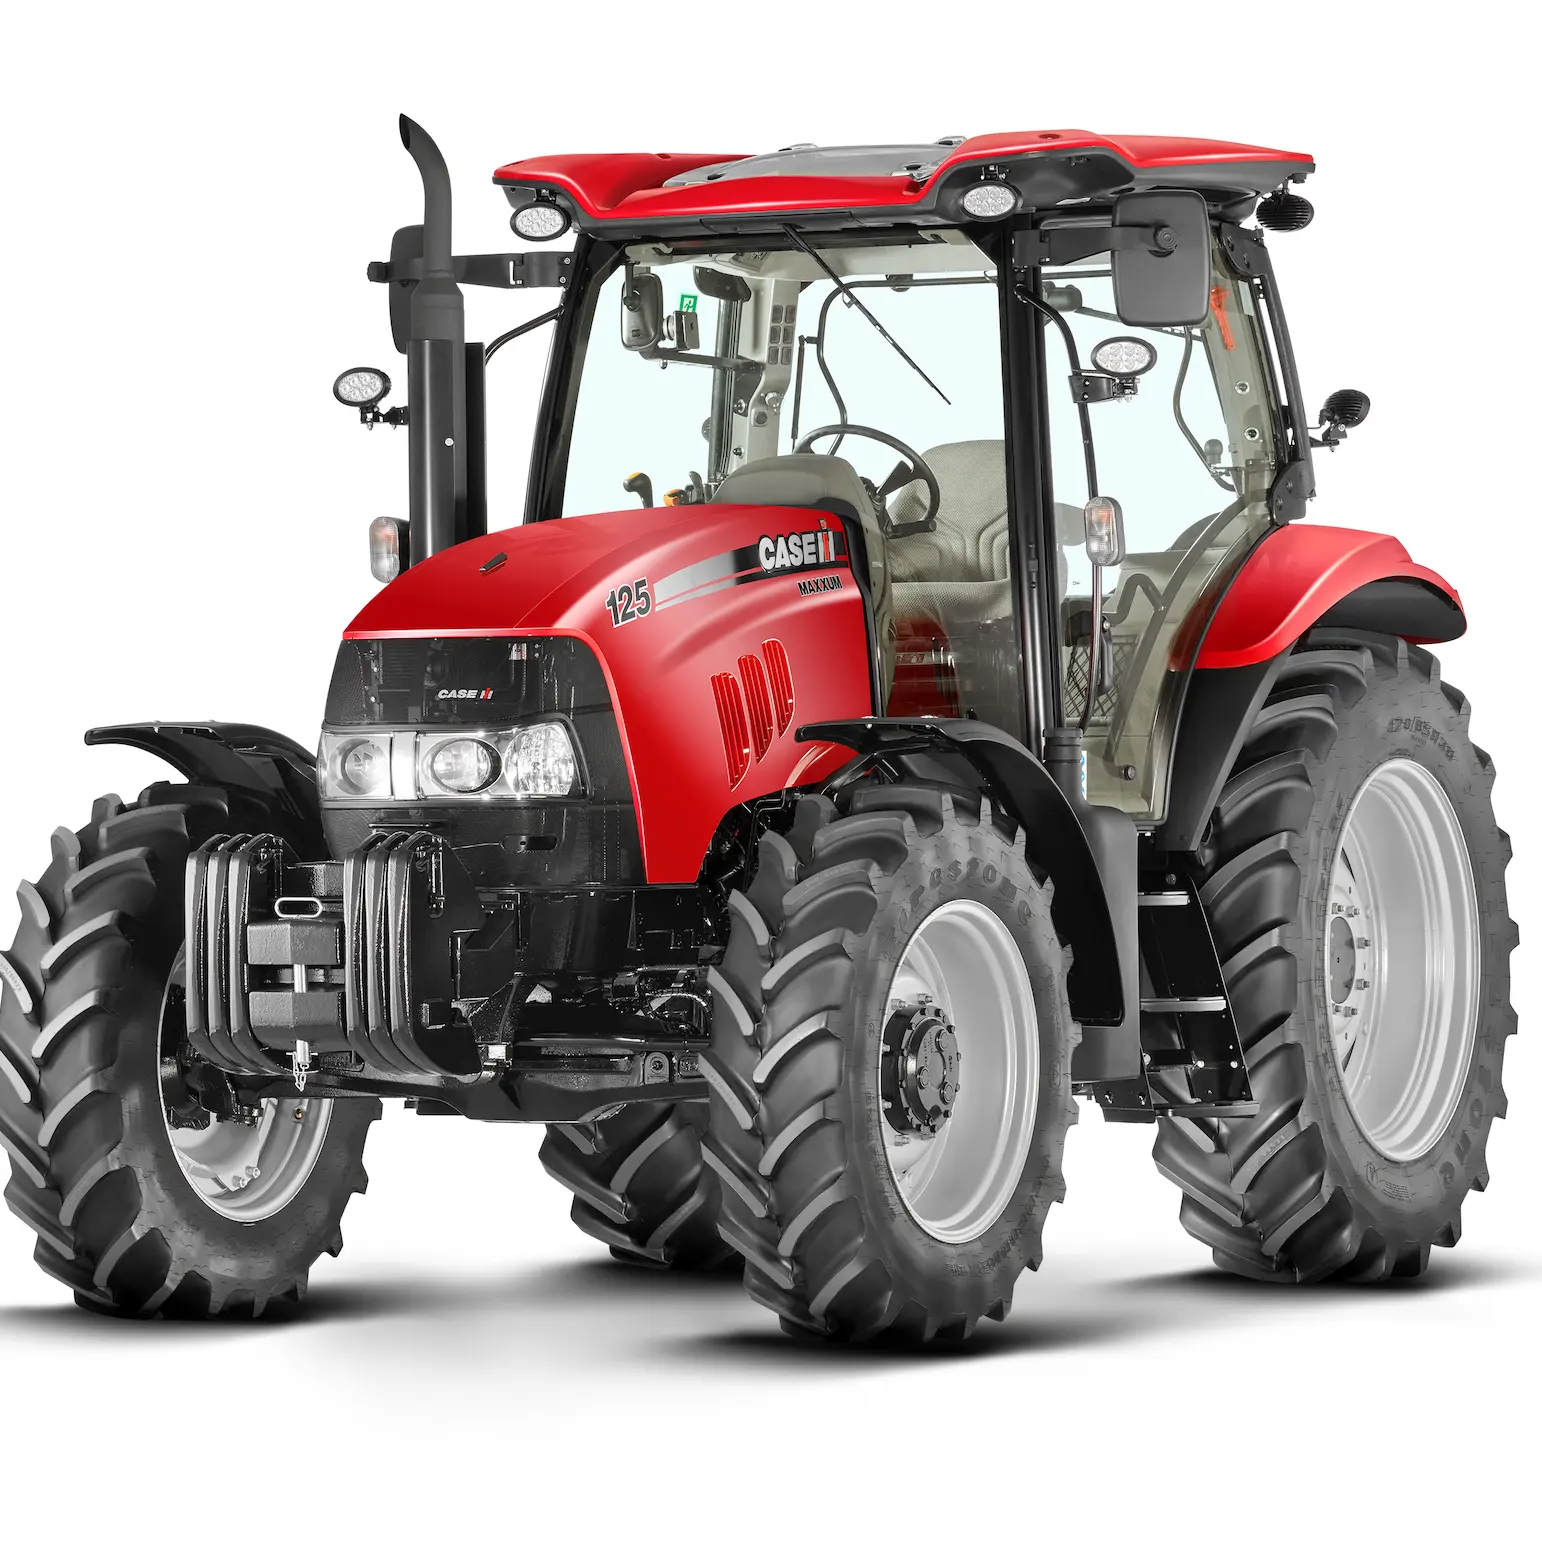 Qualität Gebraucht koffer IH Landwirtschaft traktor 125A Ackers chlepper Landwirtschaft traktor